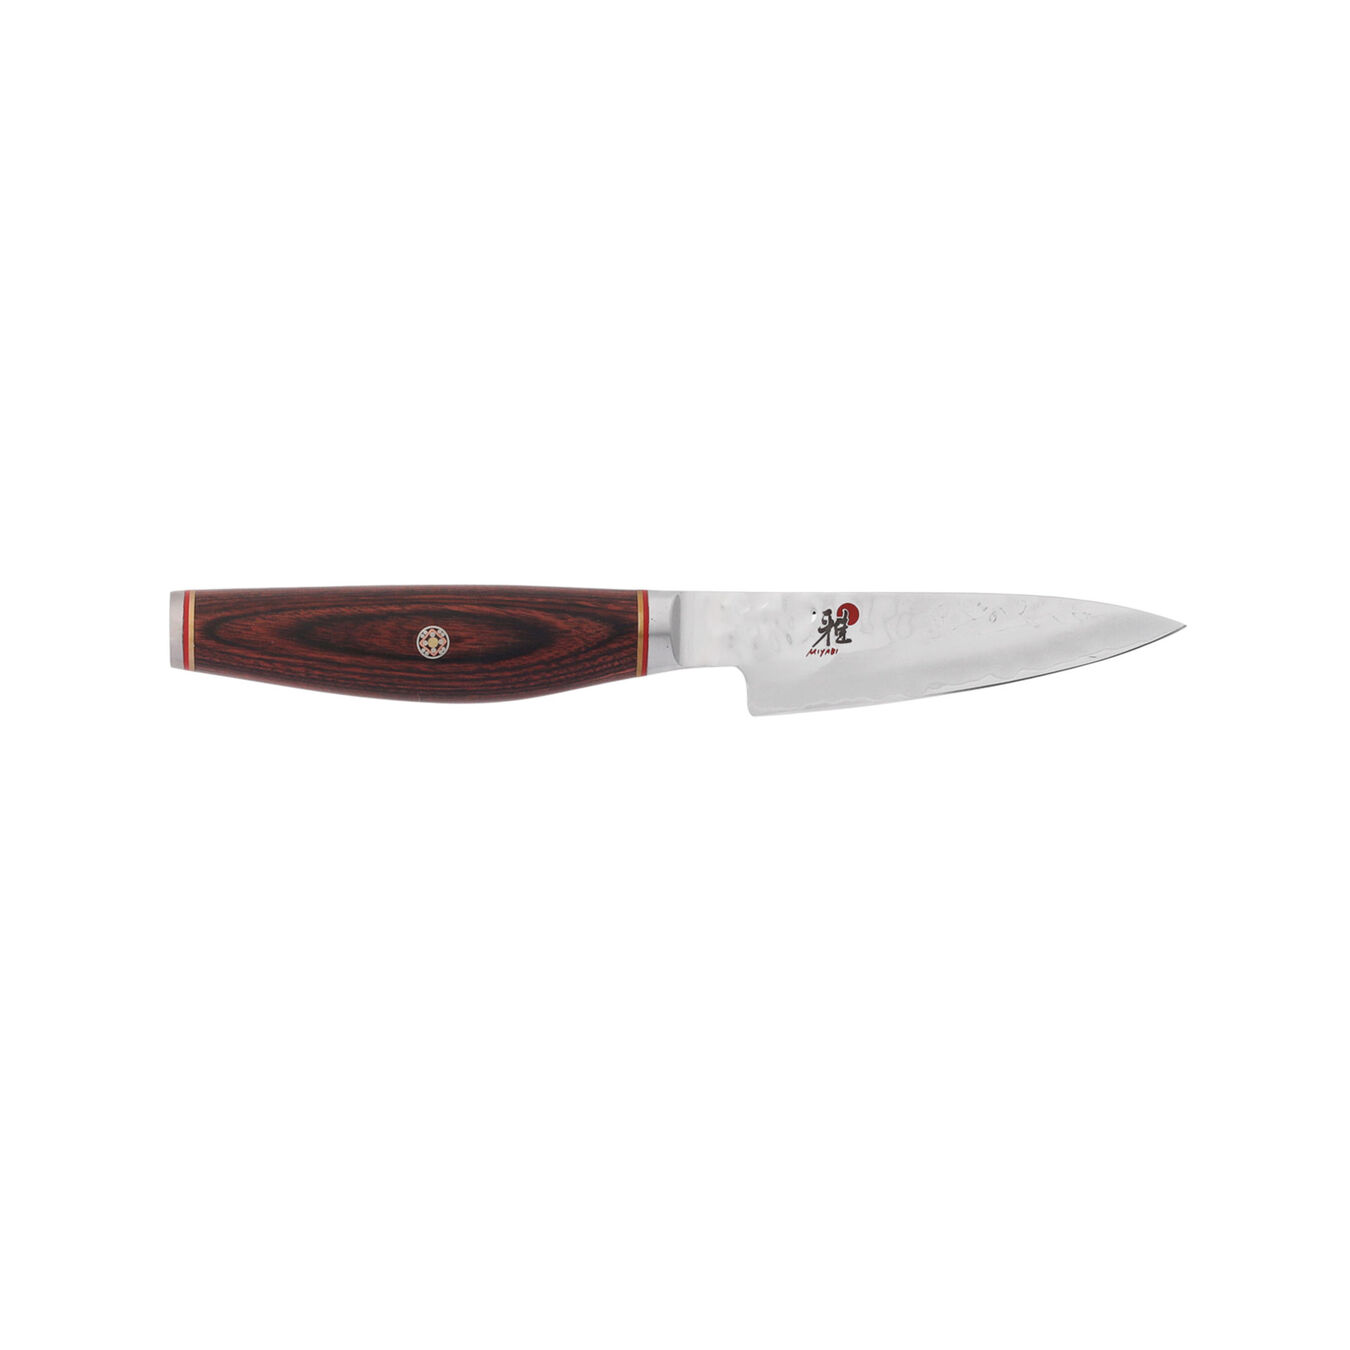 3.5-inch Pakka Wood Paring Knife,,large 2